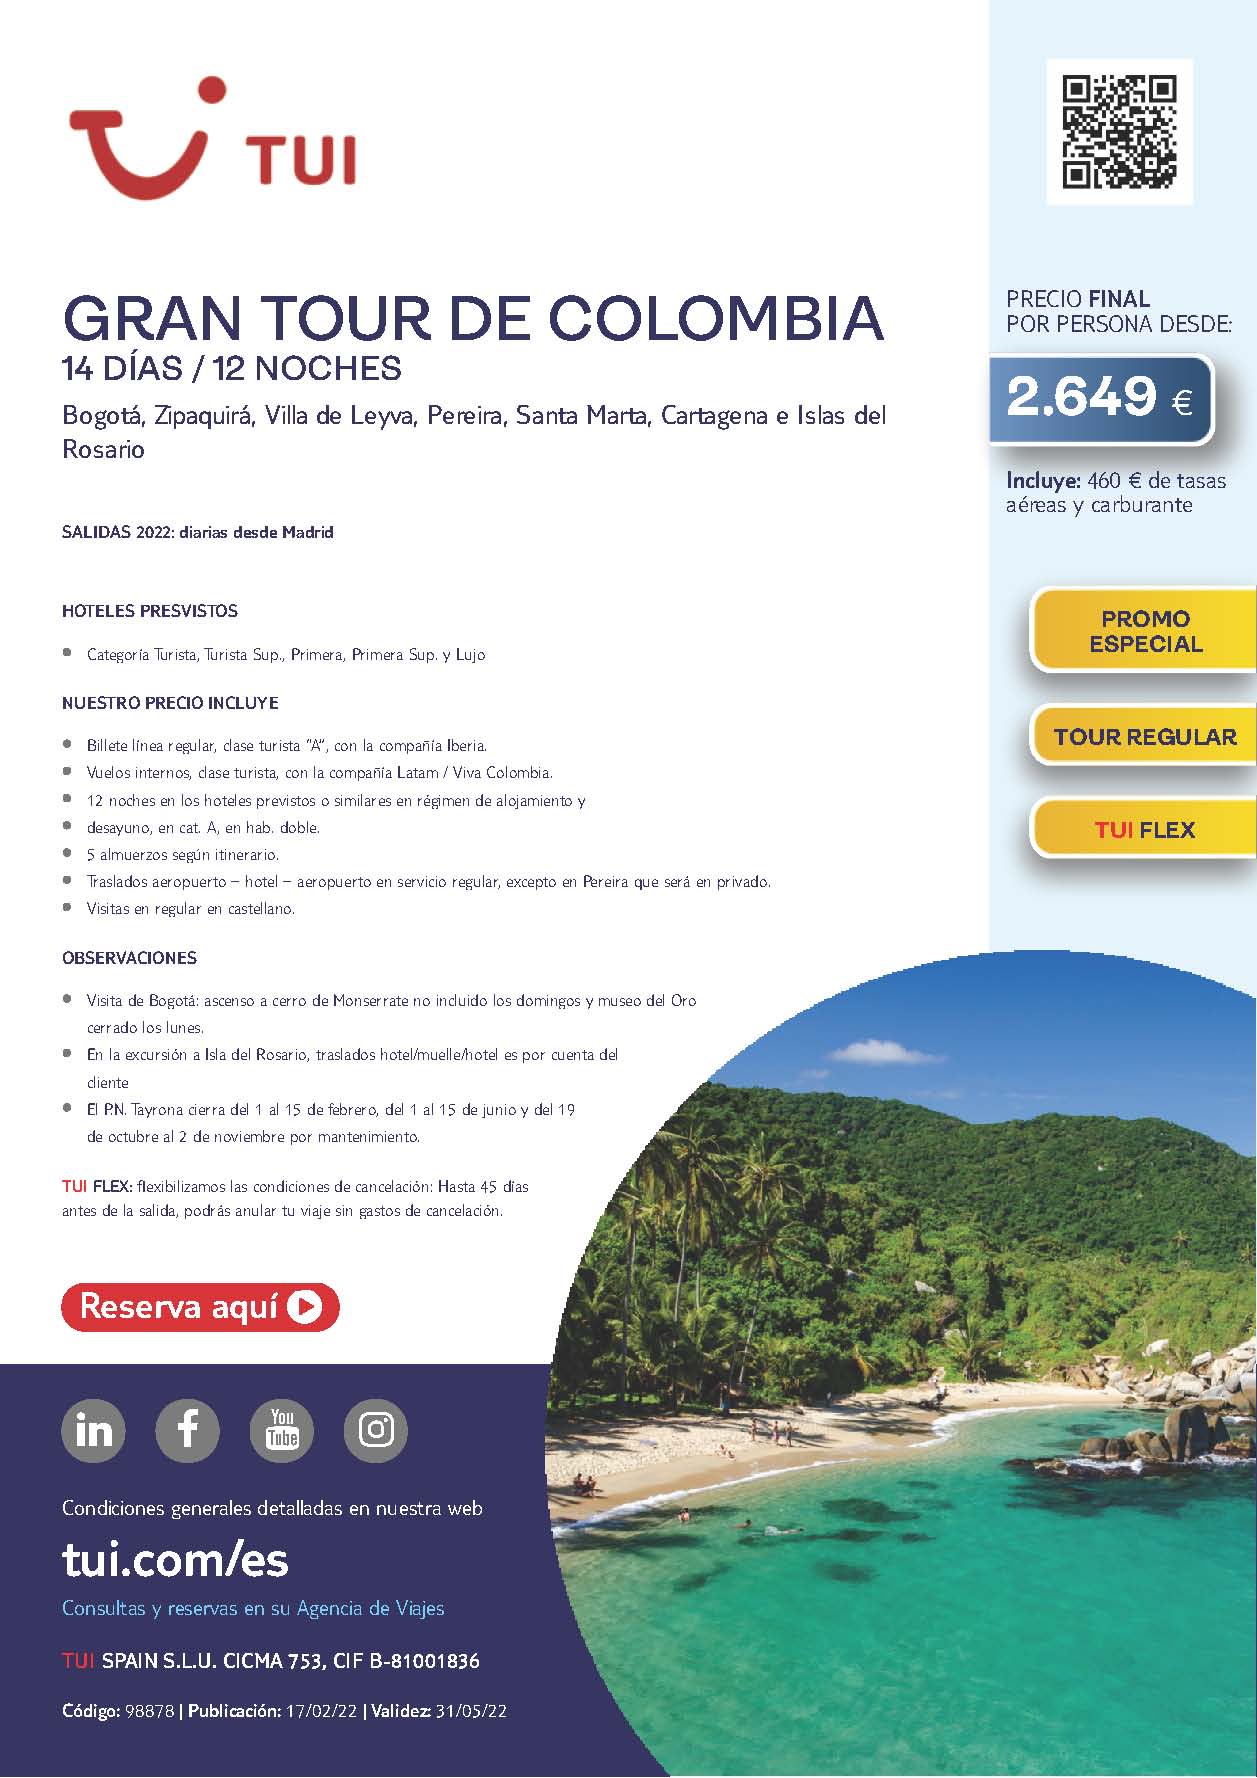 Oferta TUI Primavera 2022 Gran Tour de Colombia 14 dias salidas desde Madrid vuelos directos Iberia